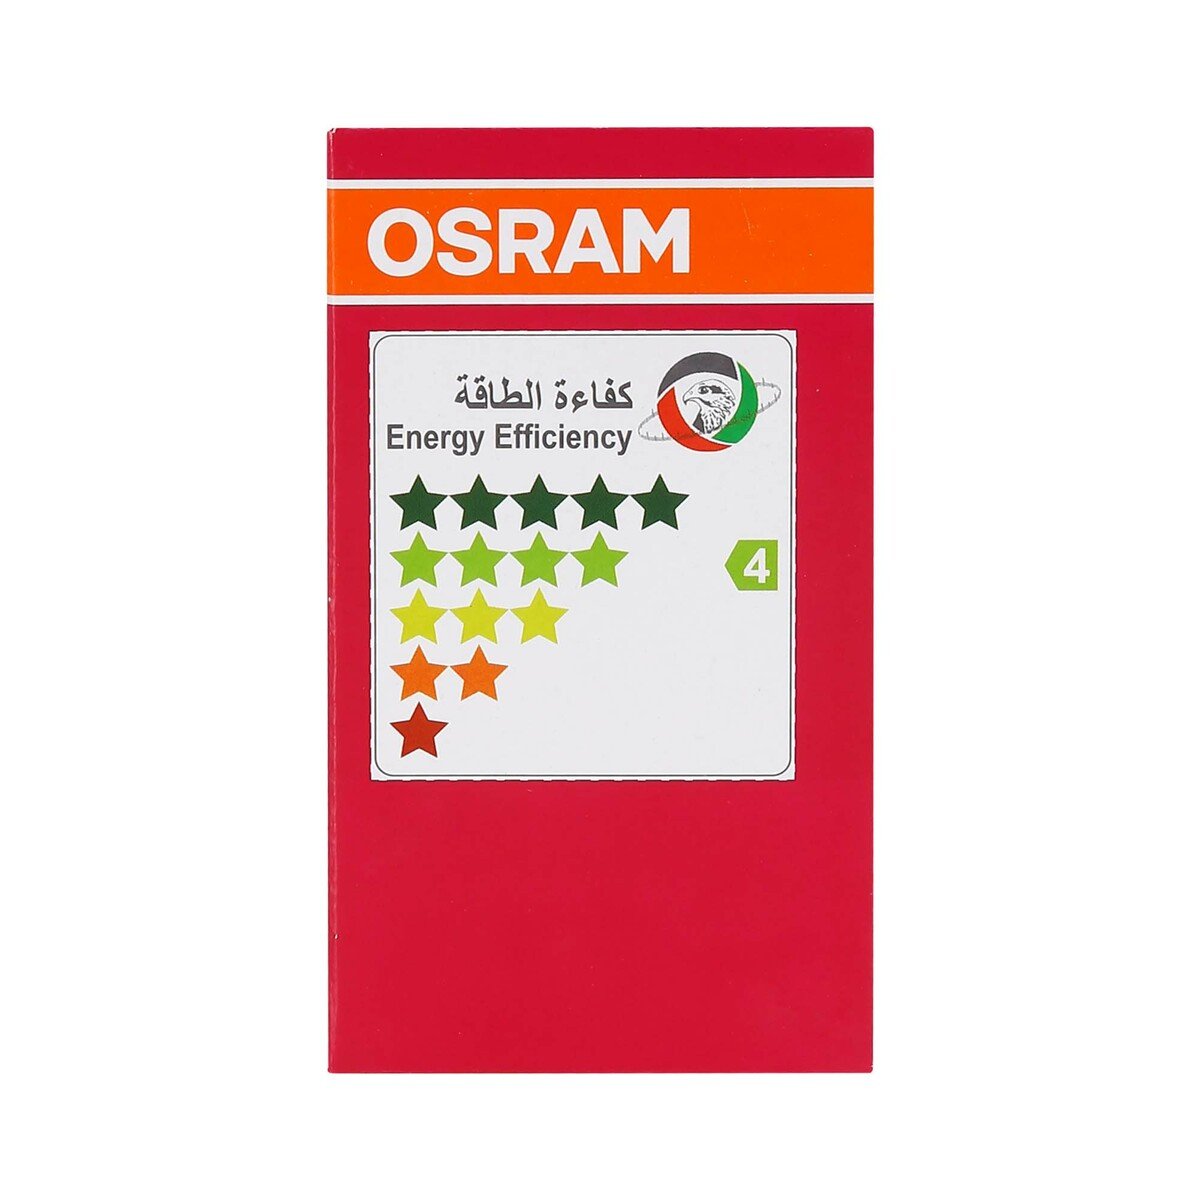 Osram Classic LED Bulb A60 8.5W E27 Cool Daylight 3pcs